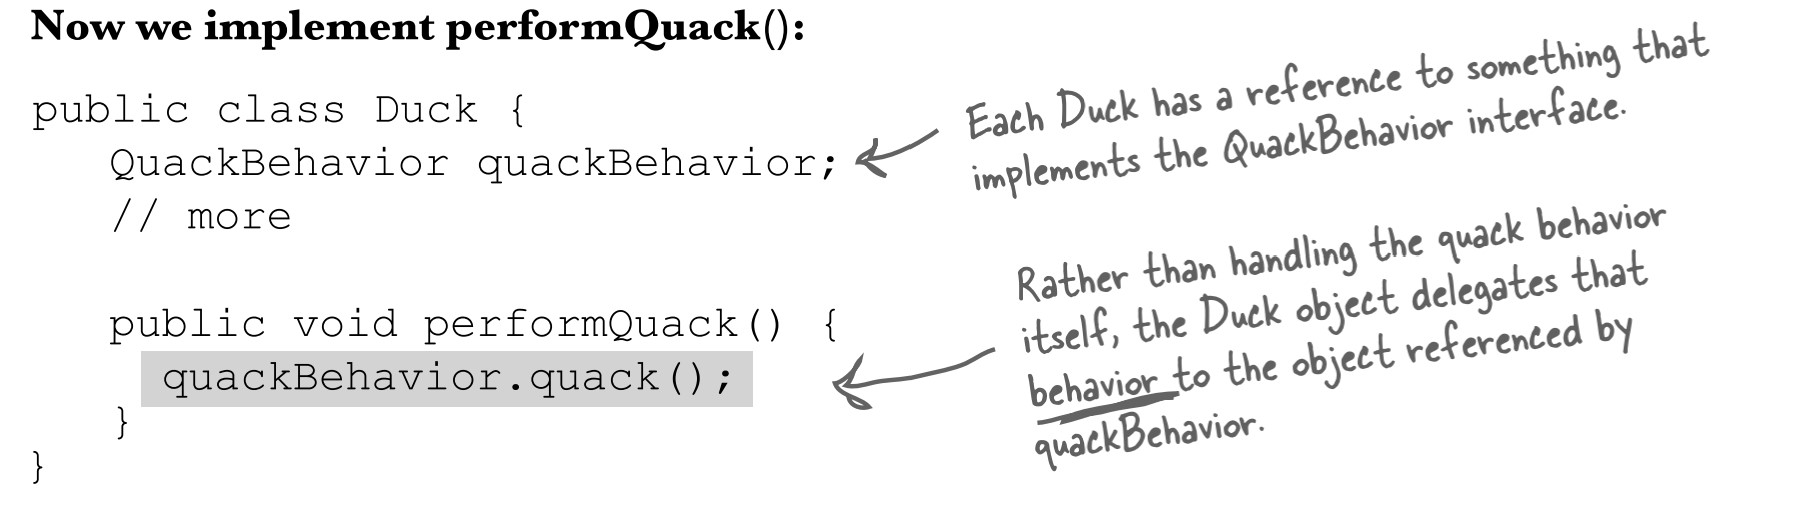 Implement PerformQuack